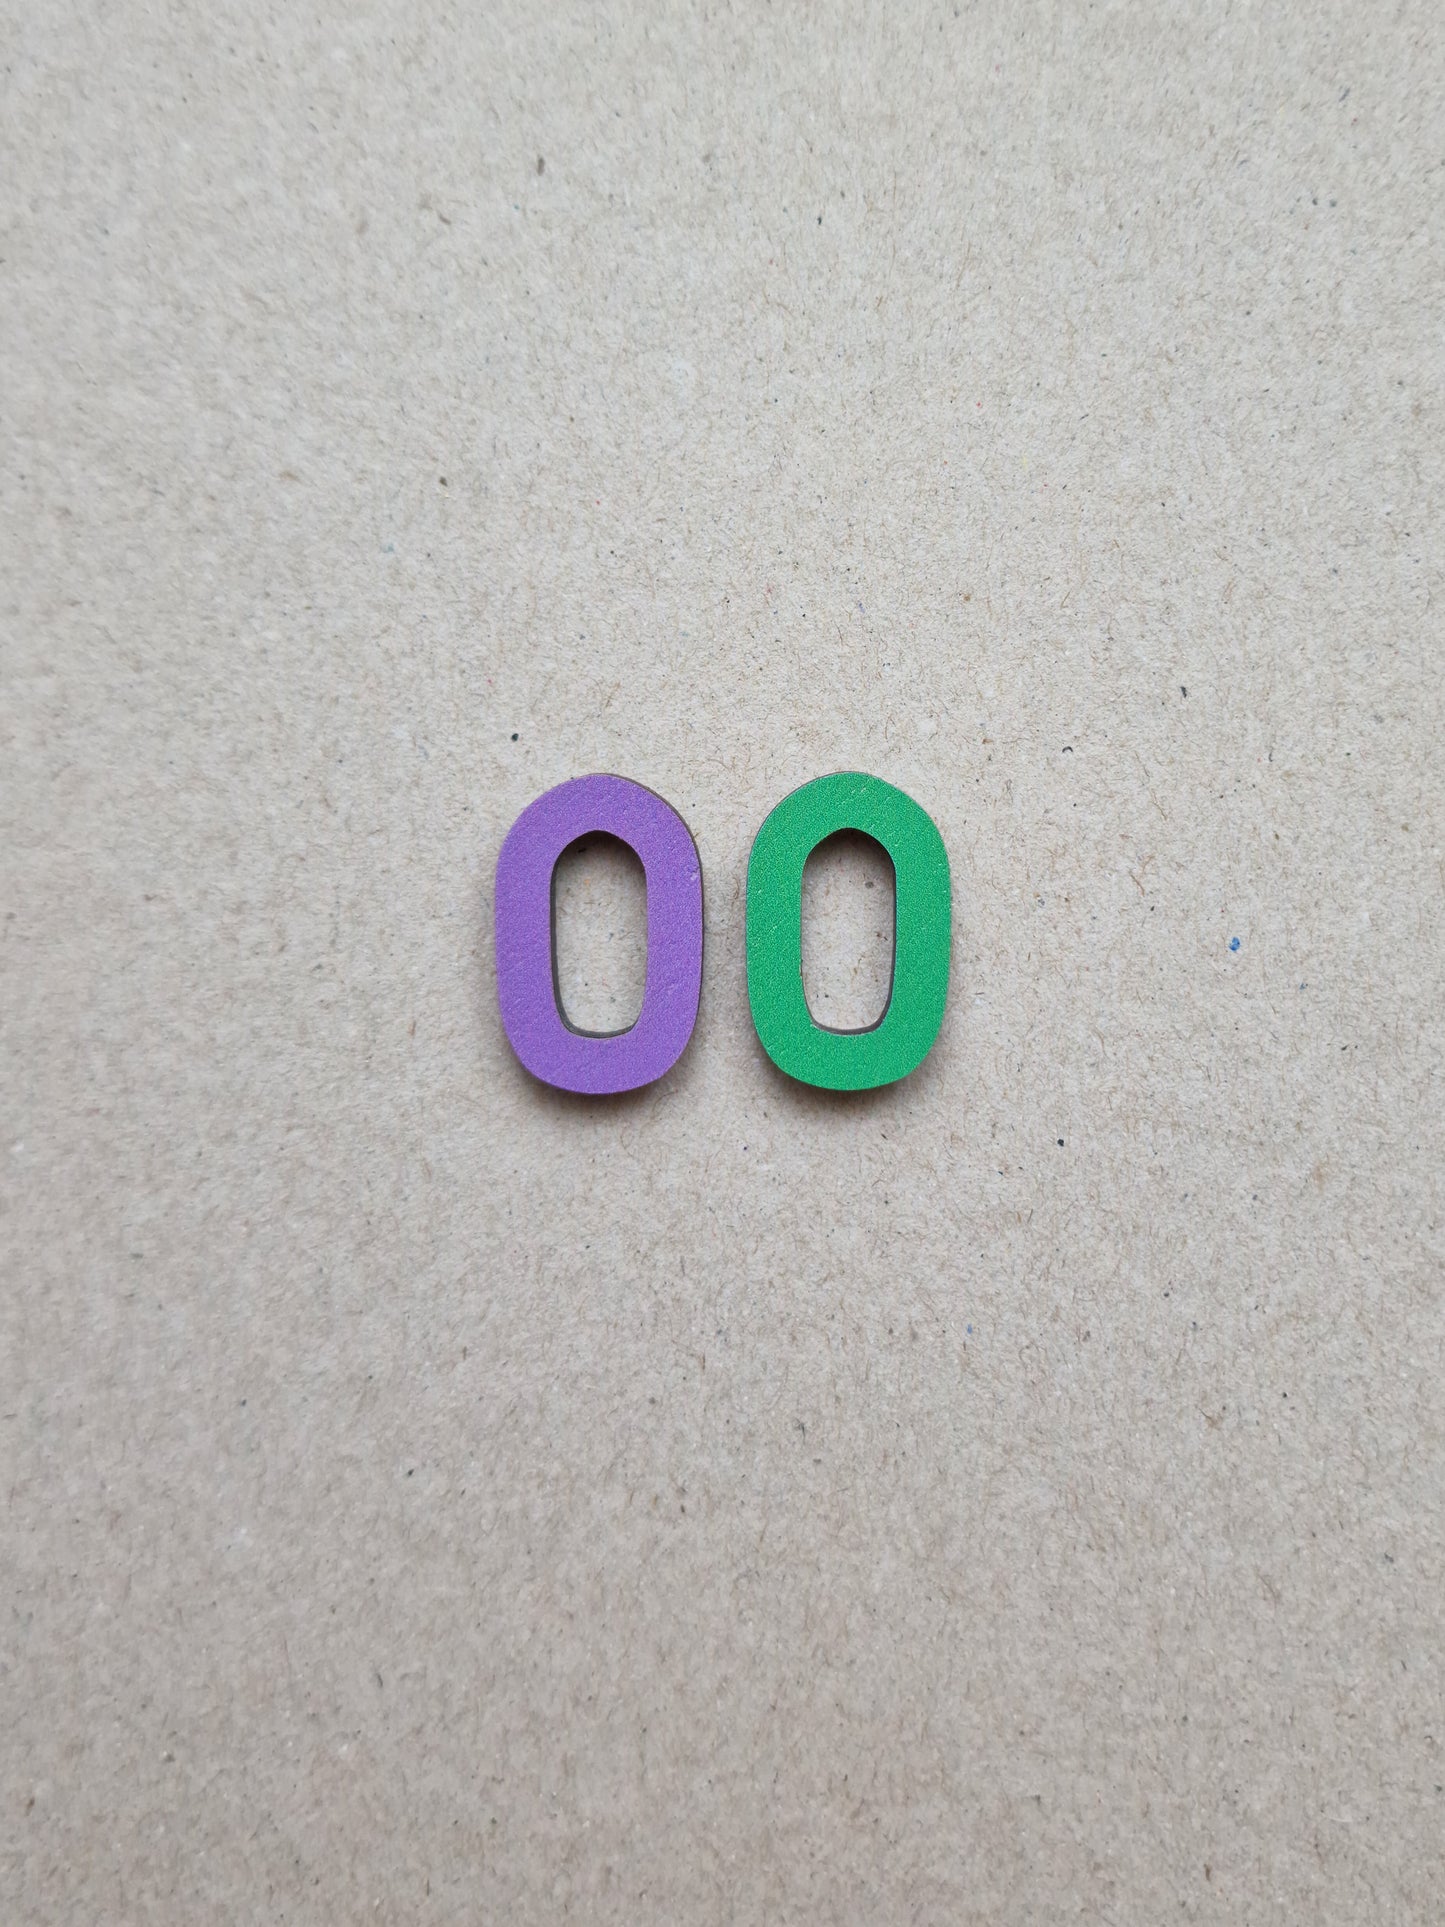 SAMPLE Loop Earrings Green and Purple